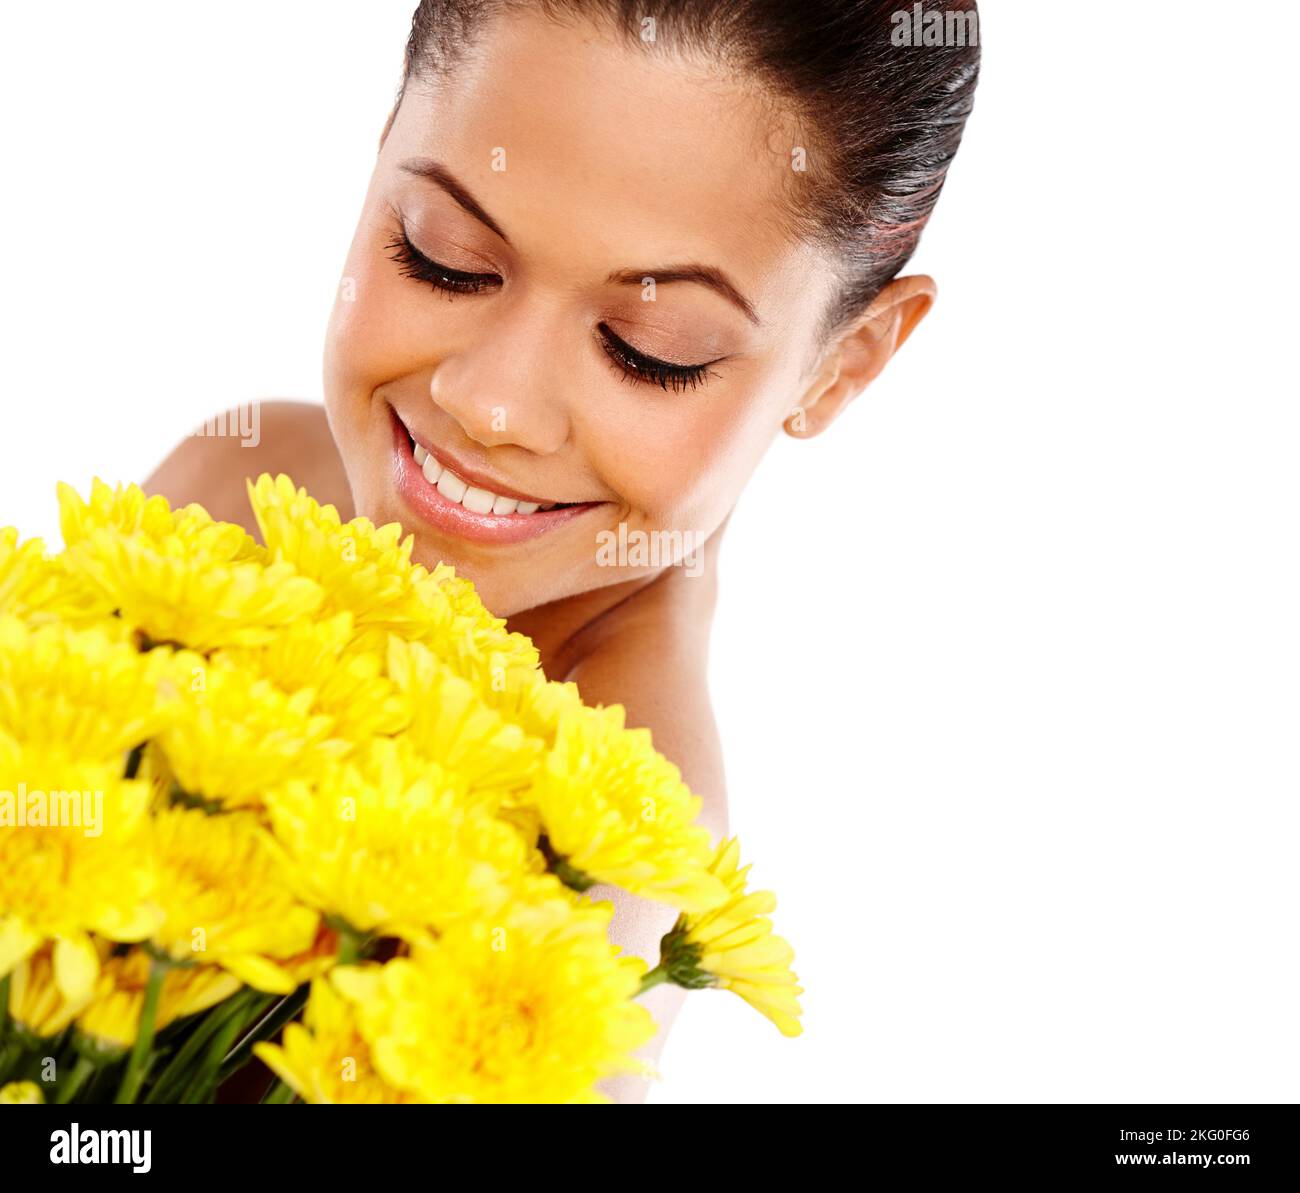 Geschenke eines heimlichen Verehrers. Eine schöne junge Frau, die einen Strauß gelber Blumen hält und ihre Schönheit vor weißem Hintergrund bewundert. Stockfoto